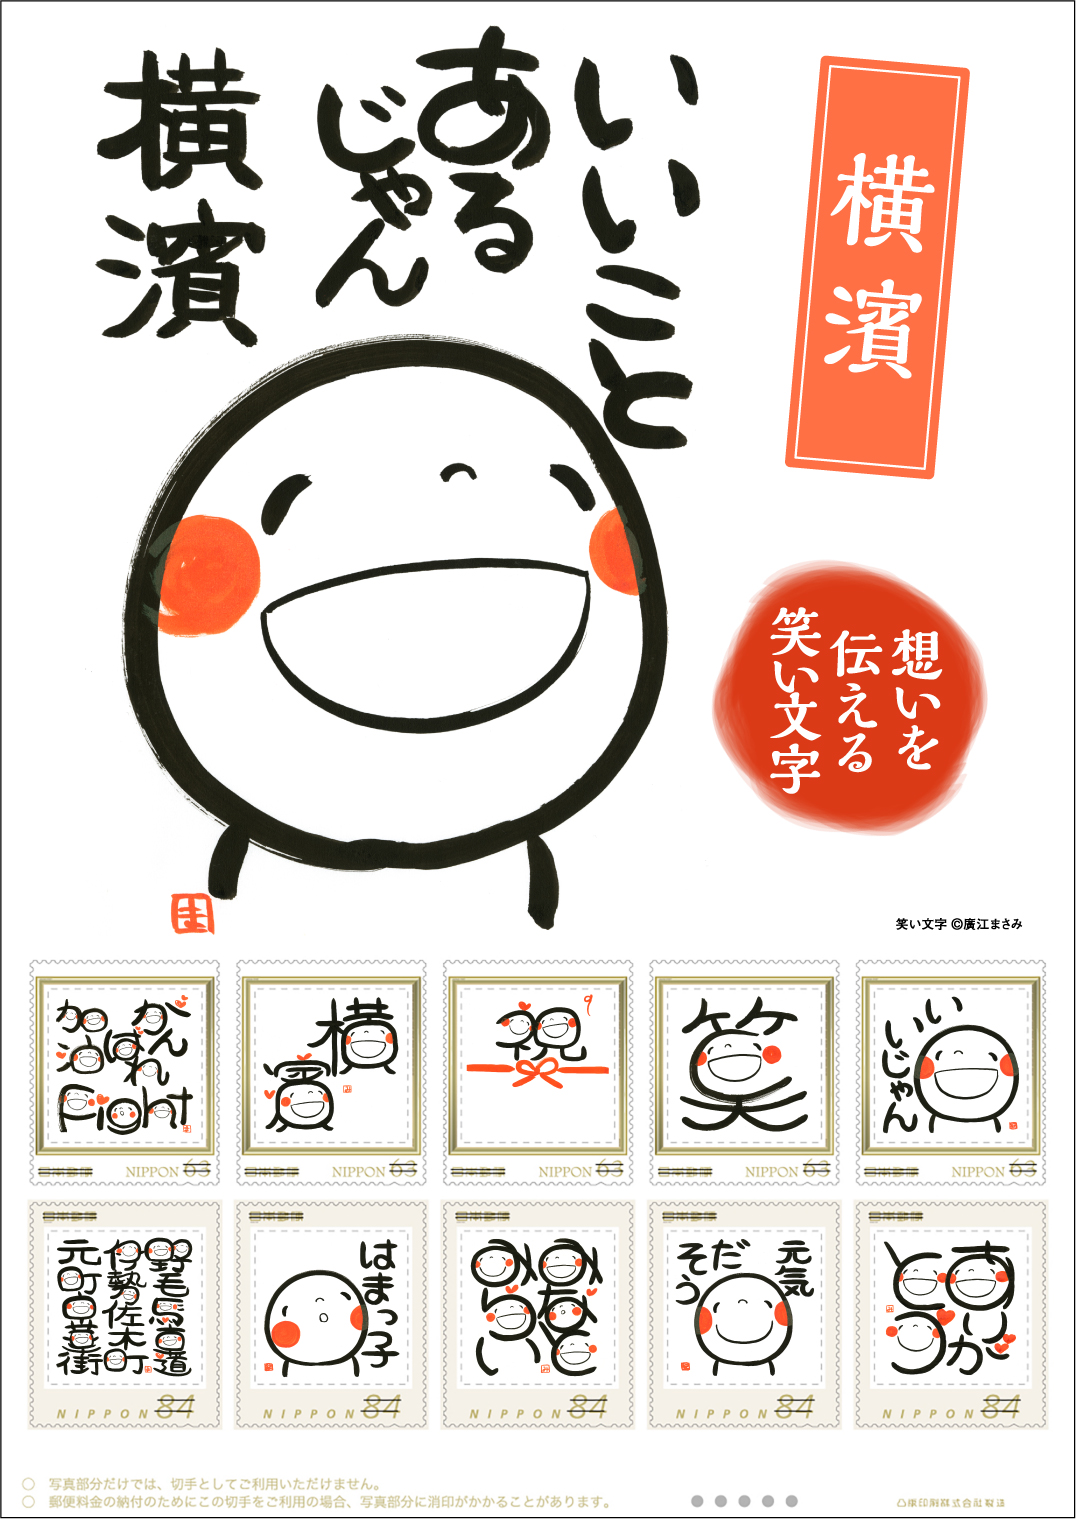 オリジナル フレーム切手「いいことあるじゃん 横濱」の販売開始と販売記念イベントの開催